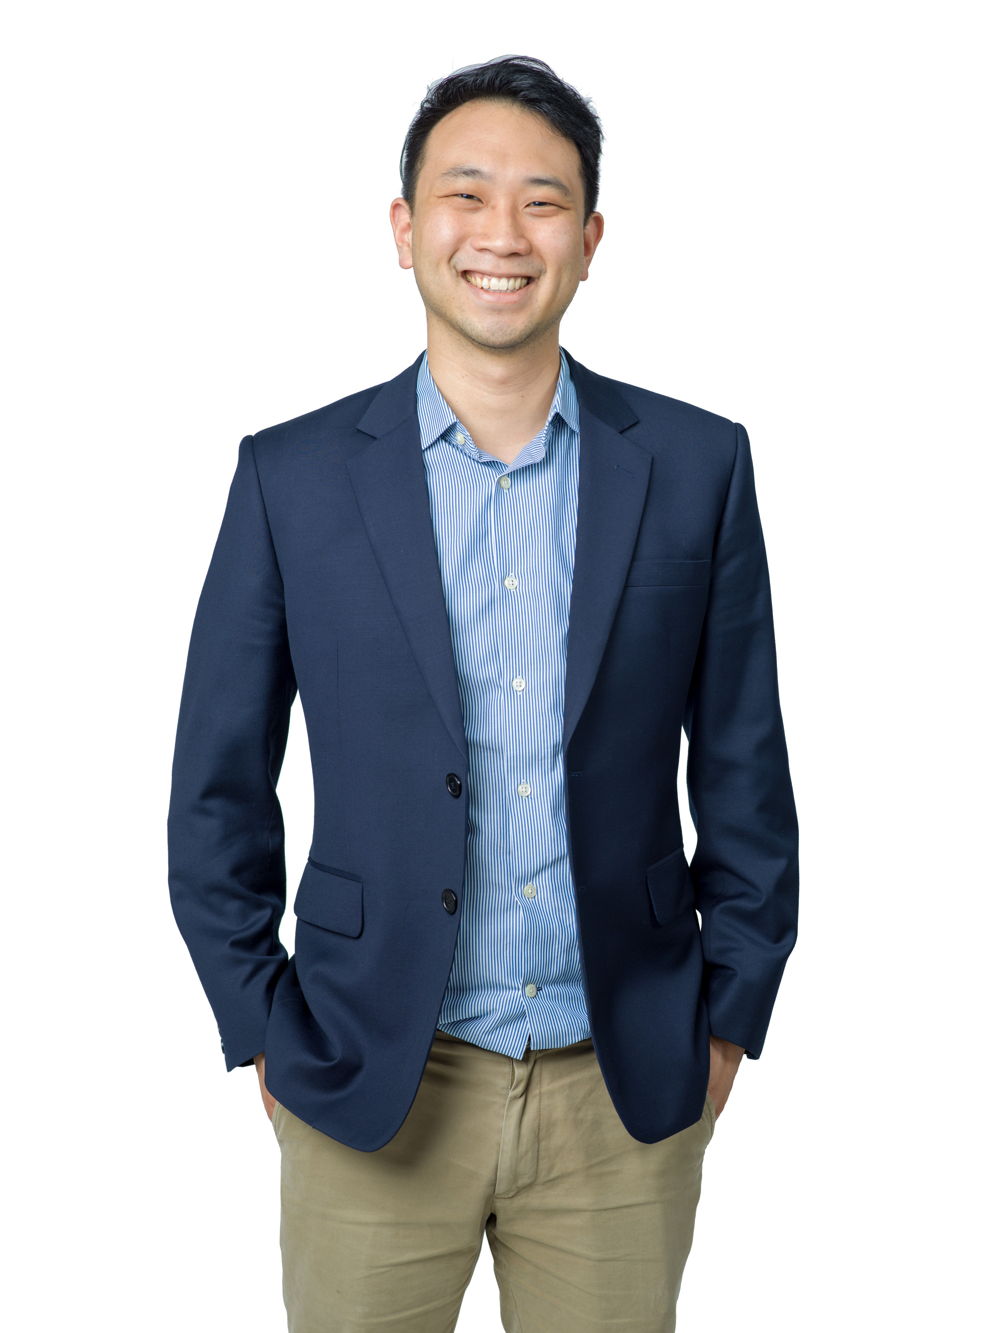 Lucien Ong, Director of M&A & Corporate Development, Jebsen & Jessen Group